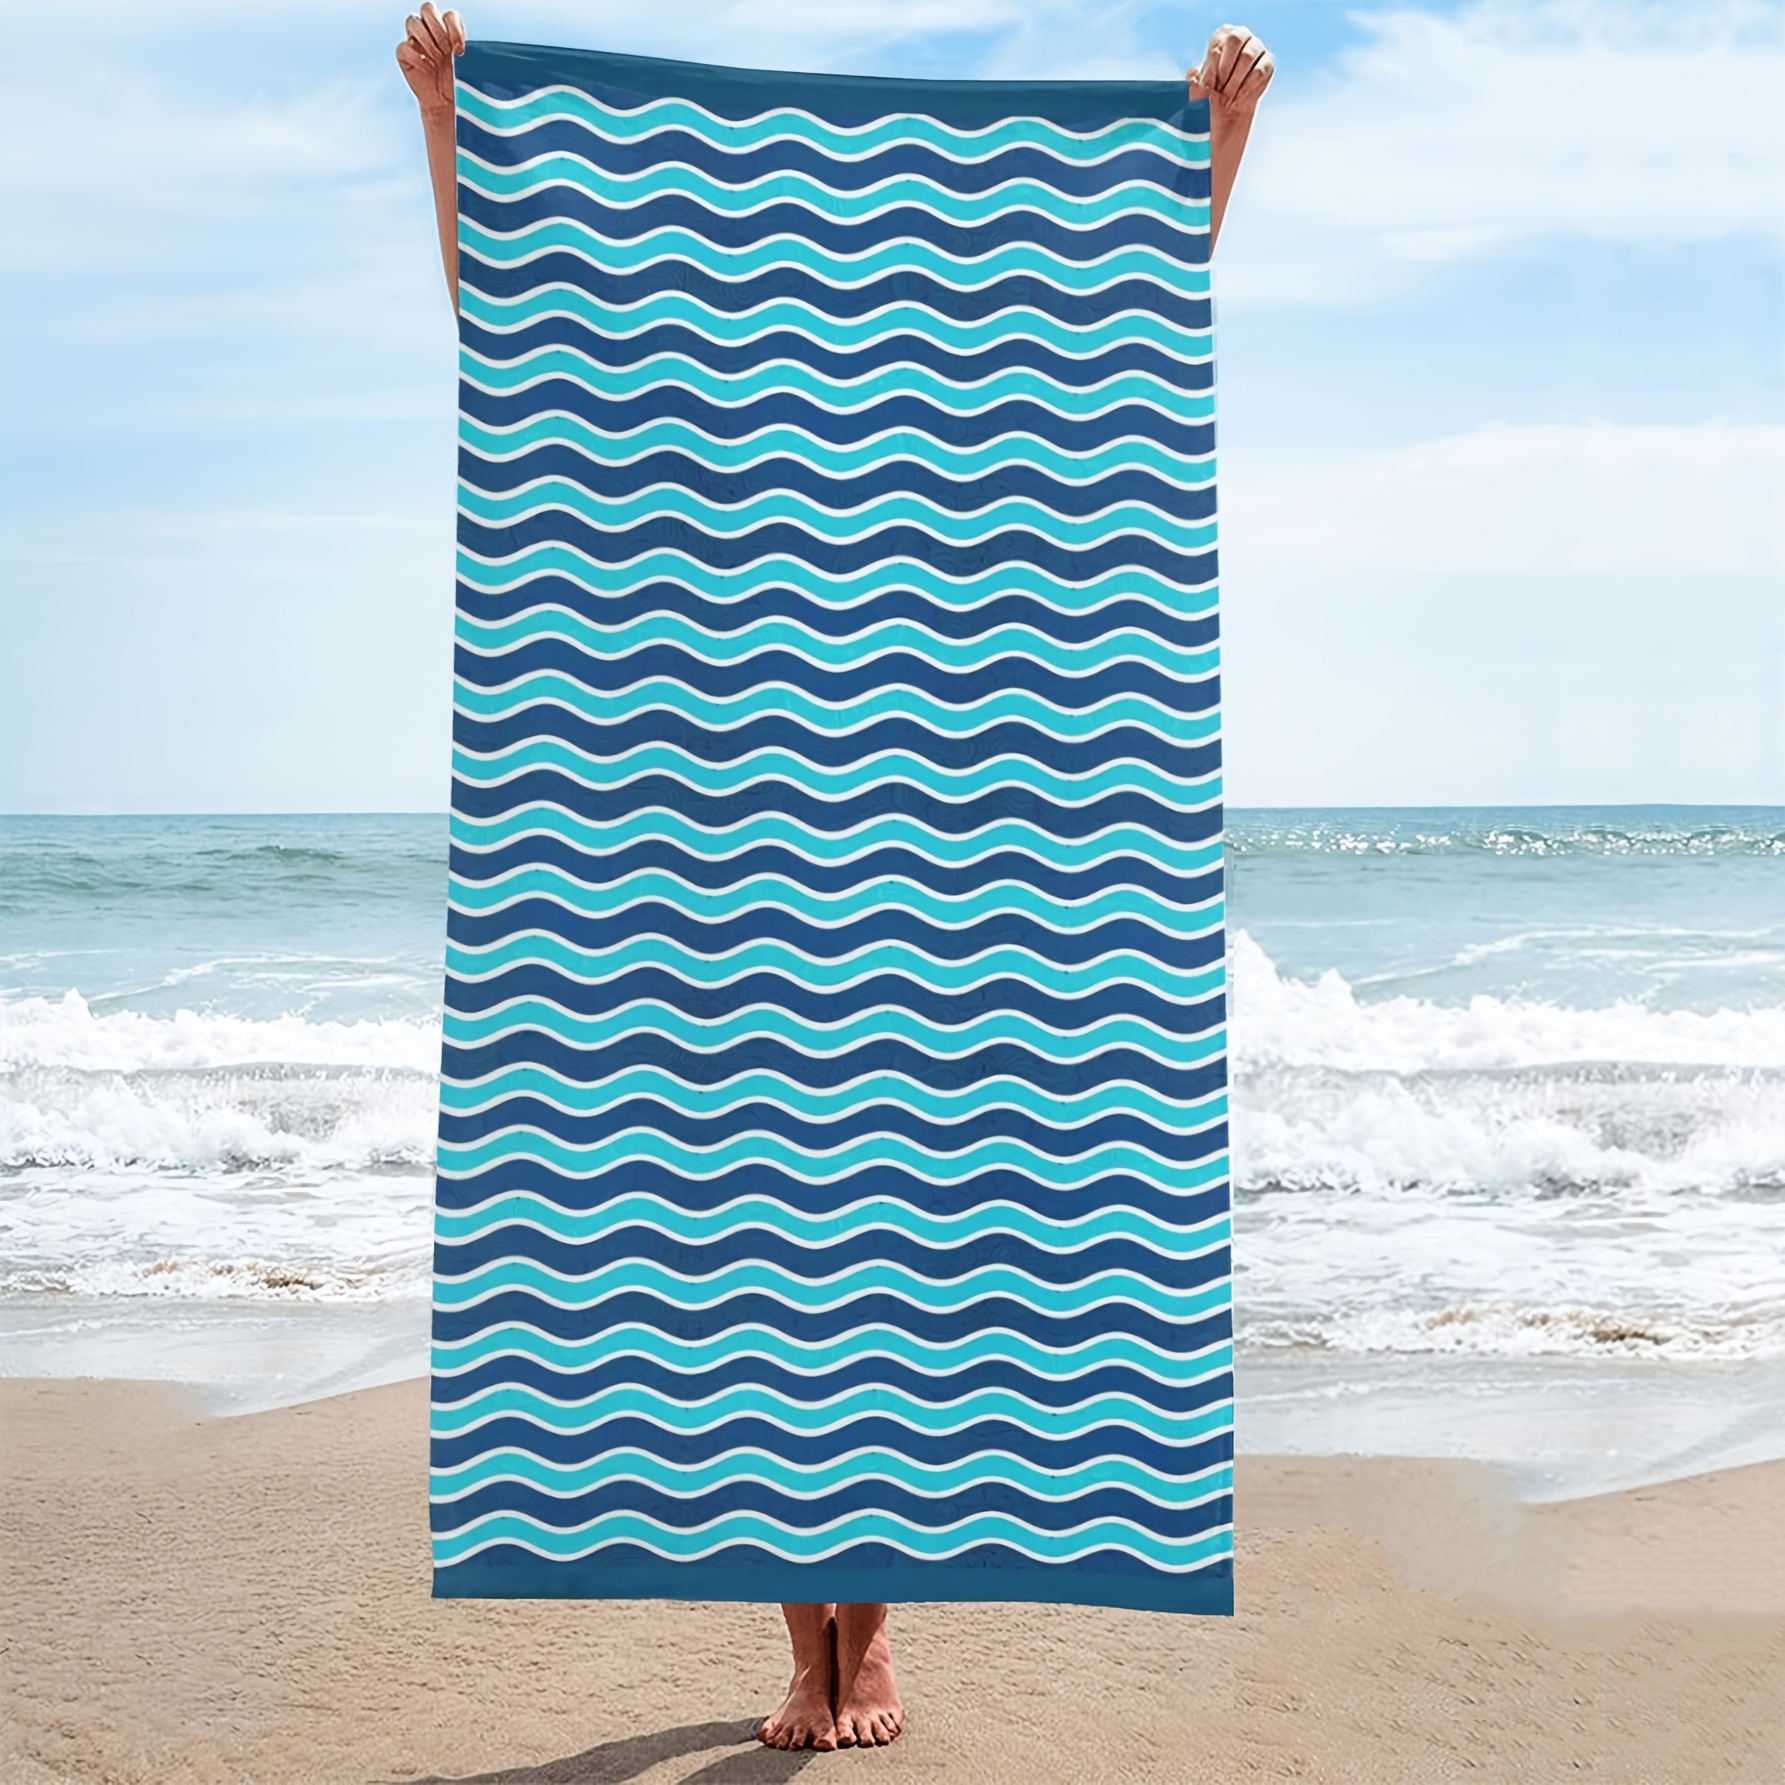 Moko Strandtuch für Reisen, schnell trocknende Decke, sandfreies